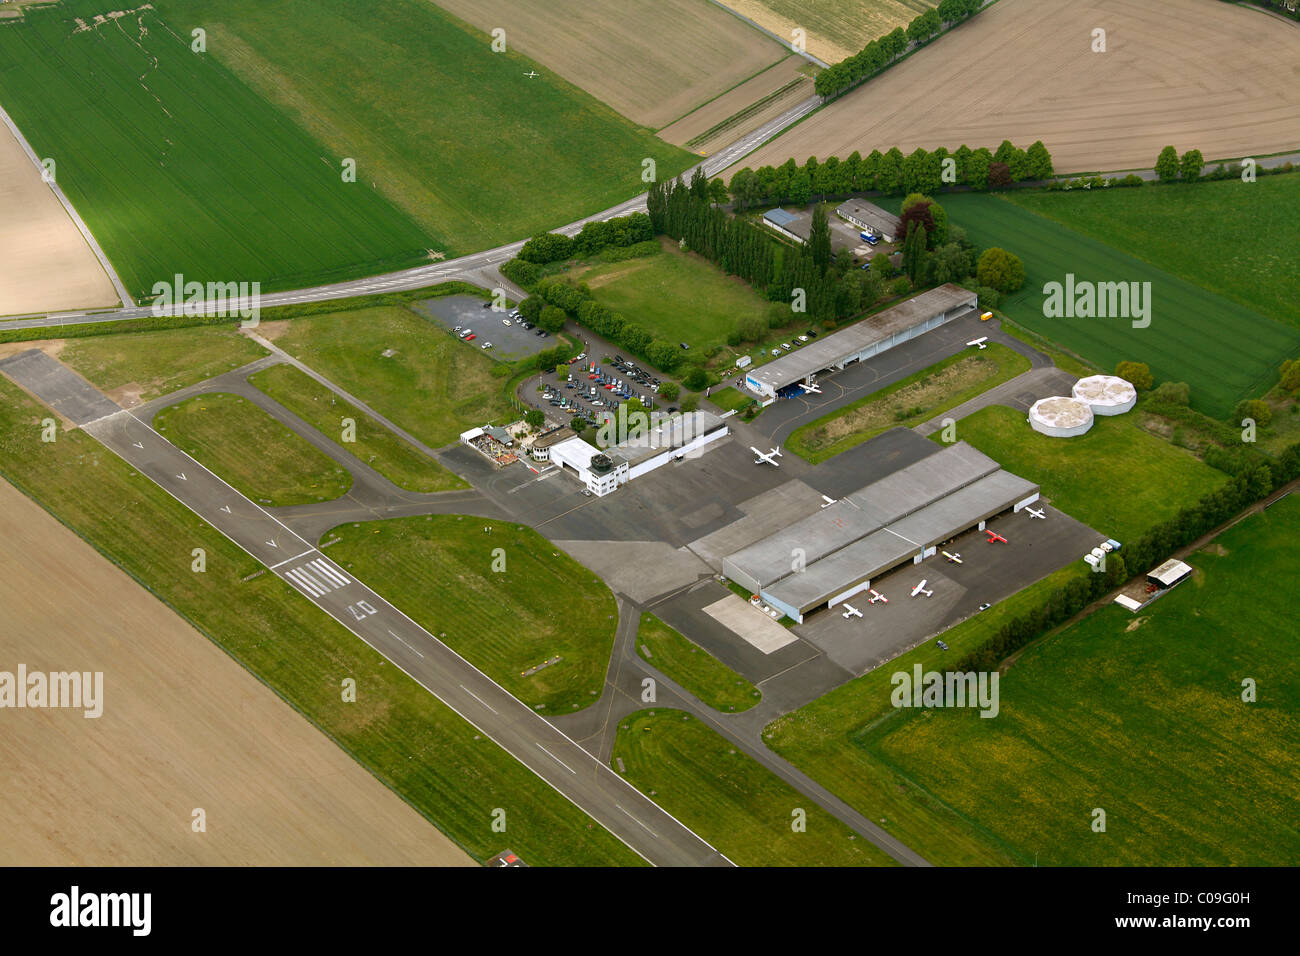 Luftbild, Flugzeughangar, allgemeine Luftfahrt Flugplatz, Flugplatz-Landebahn EDLM-Marl, Marl, Region Ruhrgebiet Stockfoto